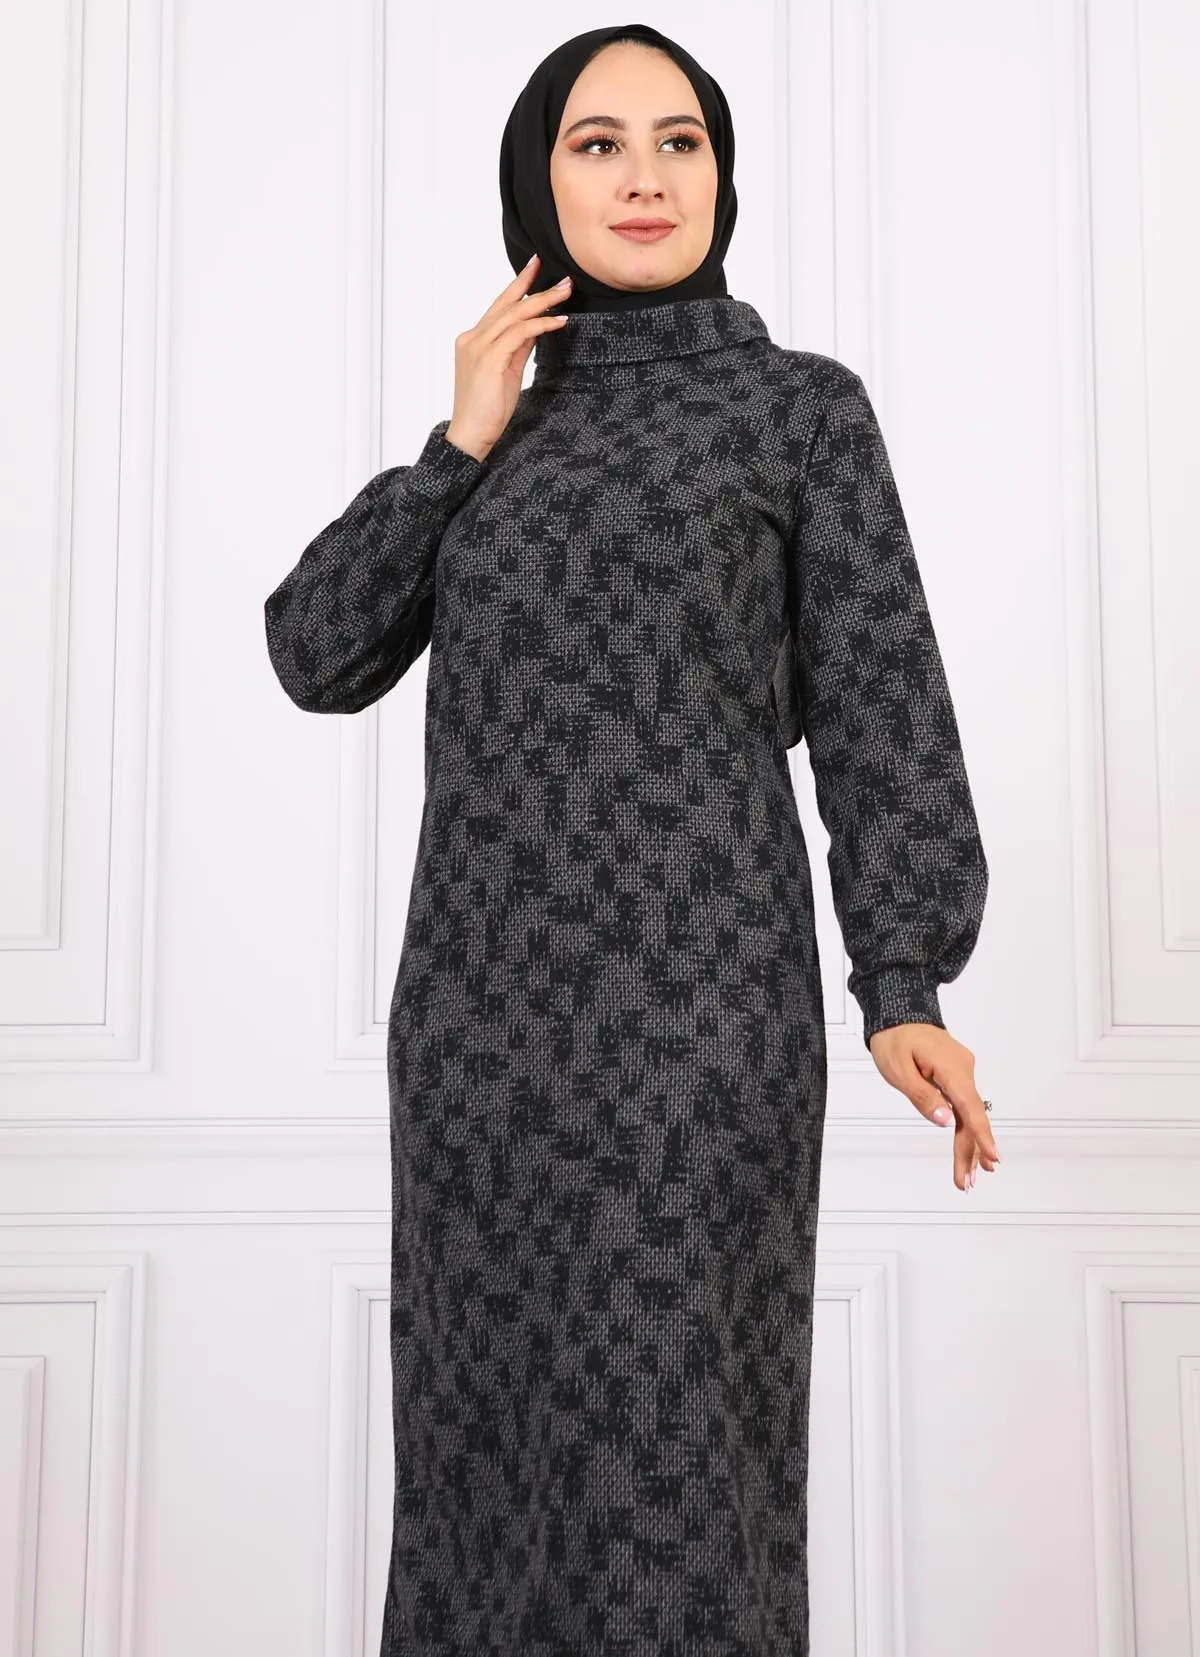 Мусульманские платья с высоким, плотно облегающим шею воротником с рисунком хиджаб нового сезона 2021 S Женская халат Исламская одежда Компле...